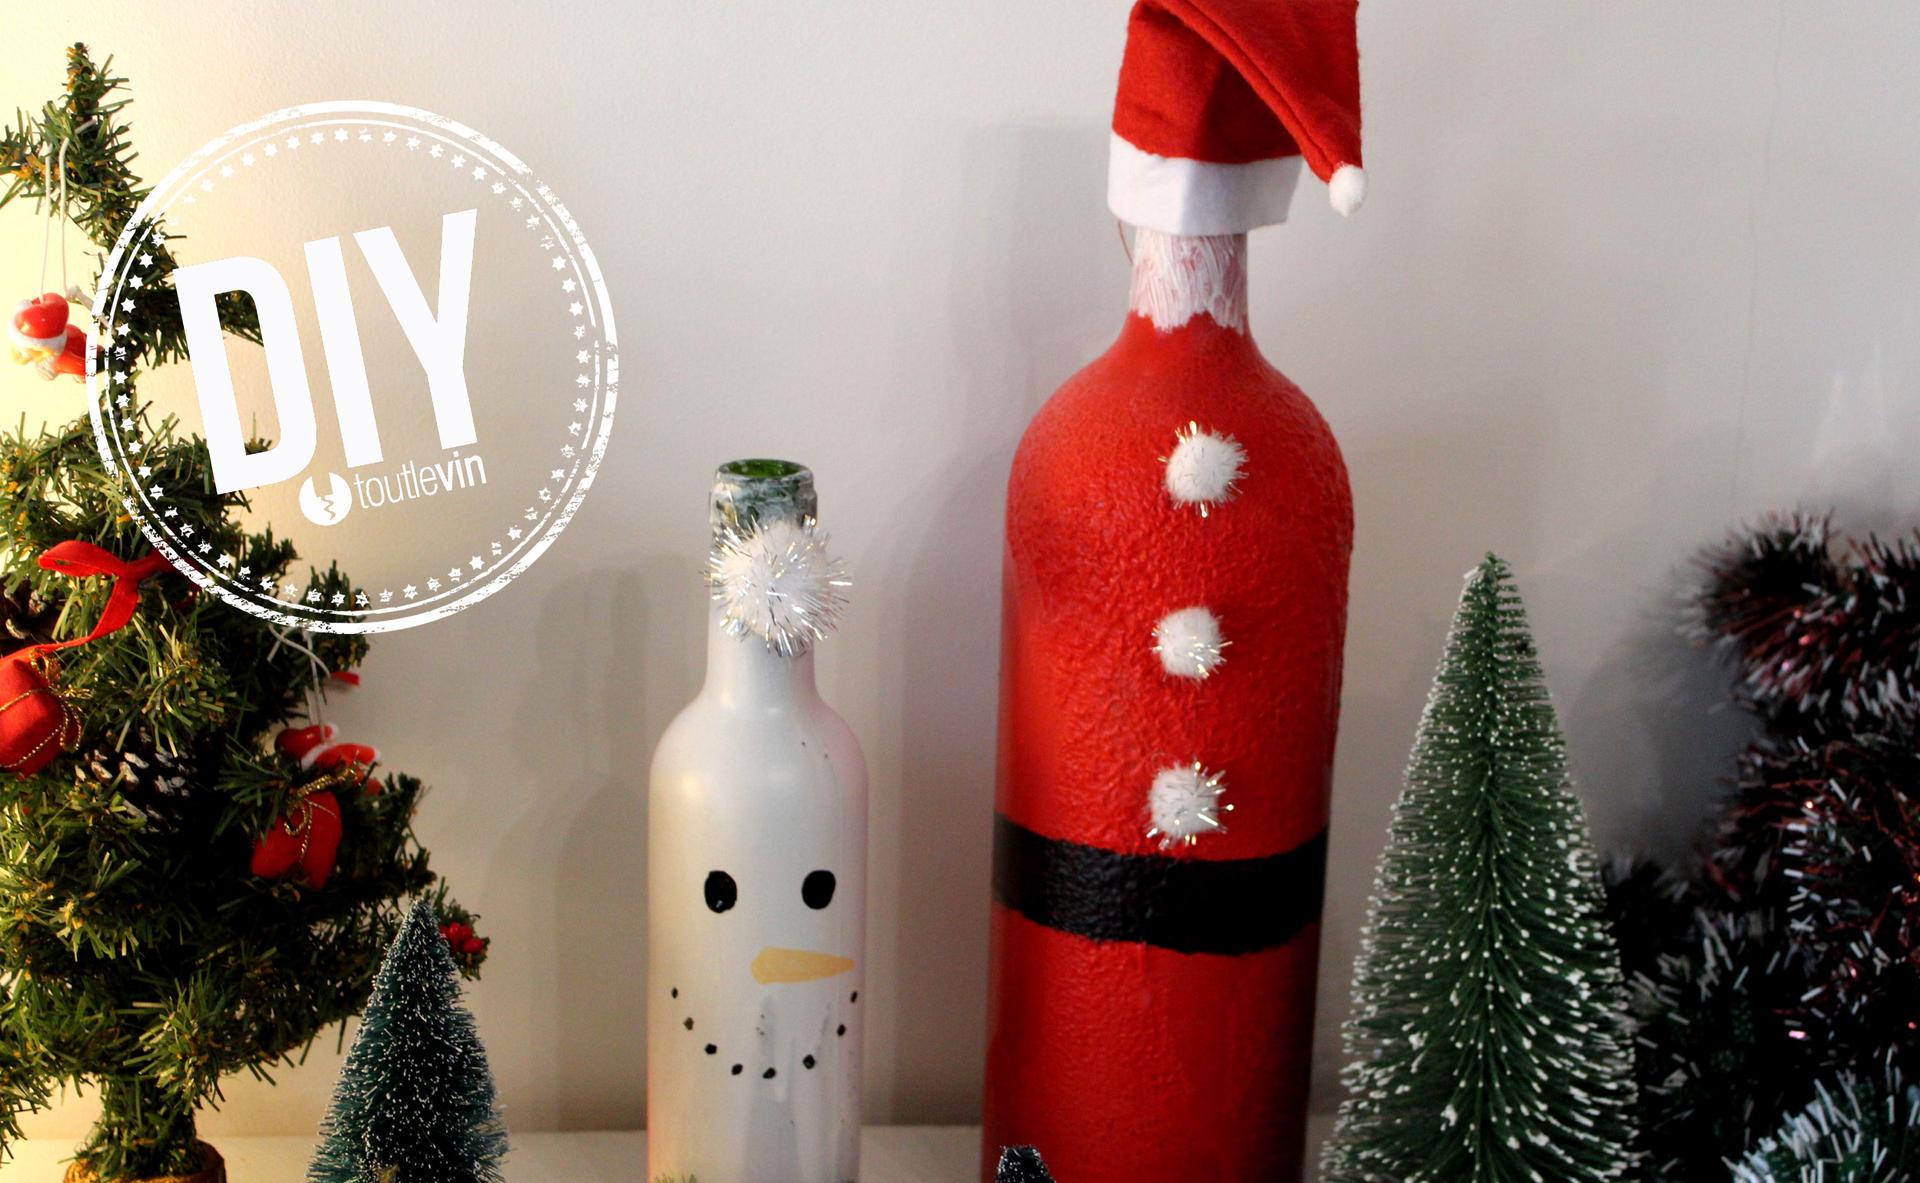 DIY : décorer des bouteilles pour Noël